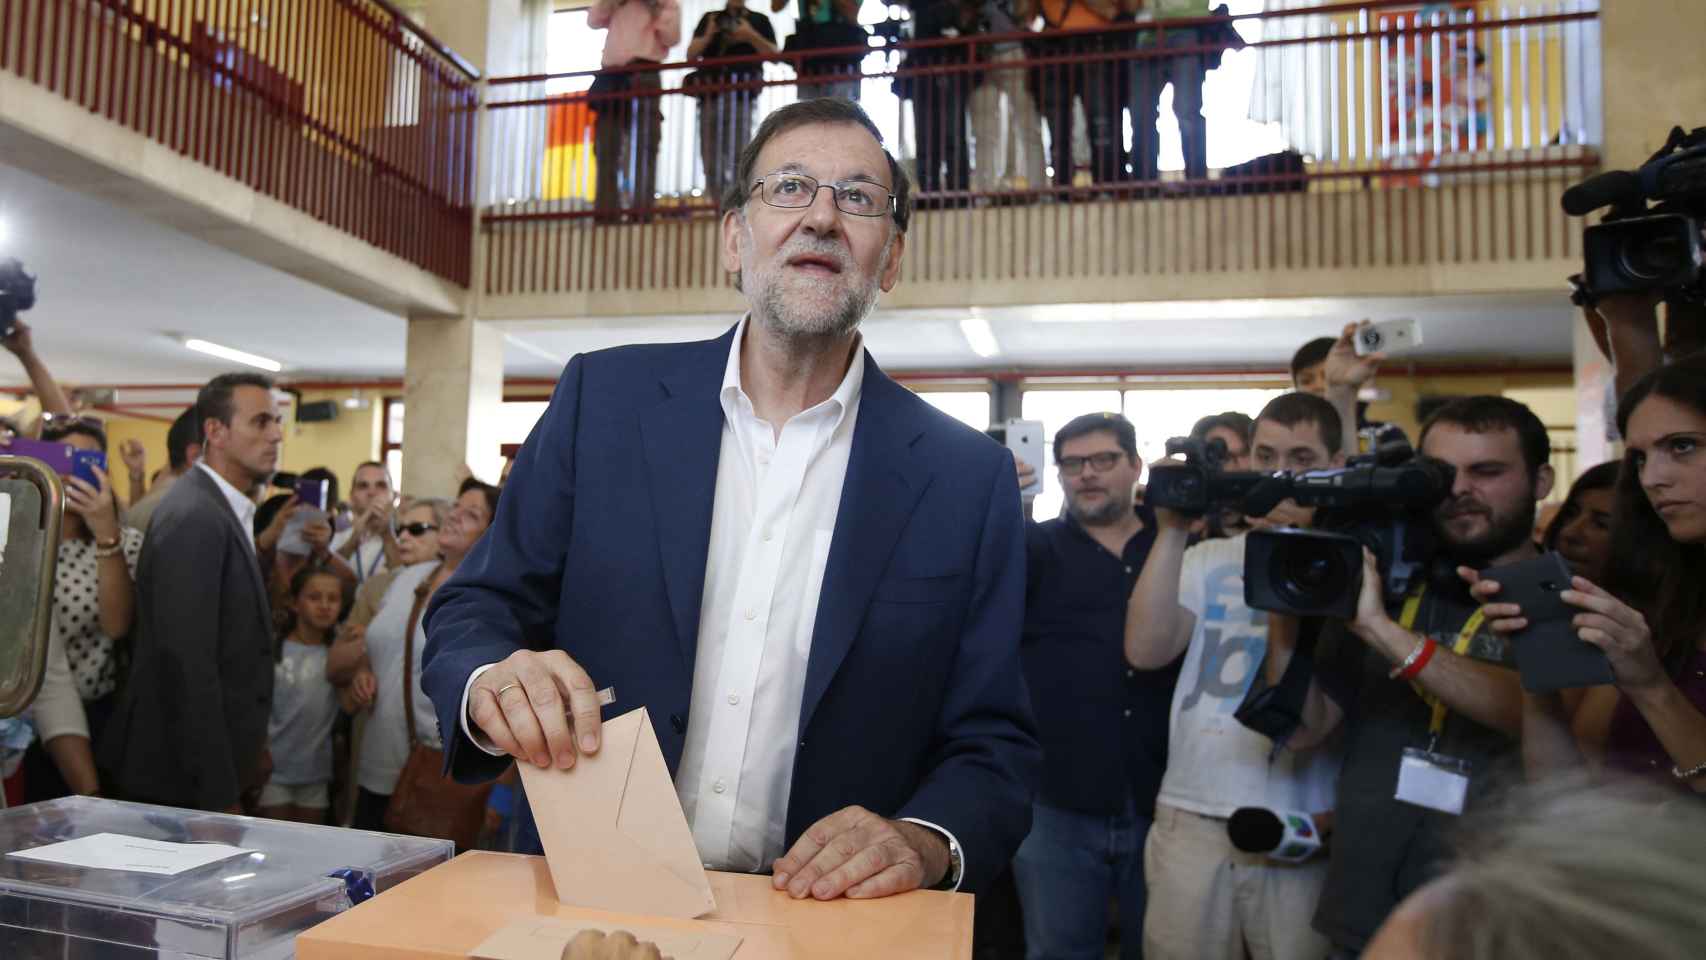 El líder del PP deposita su voto en una de las urnas del colegio Bernadette de Aravaca, Madrid.